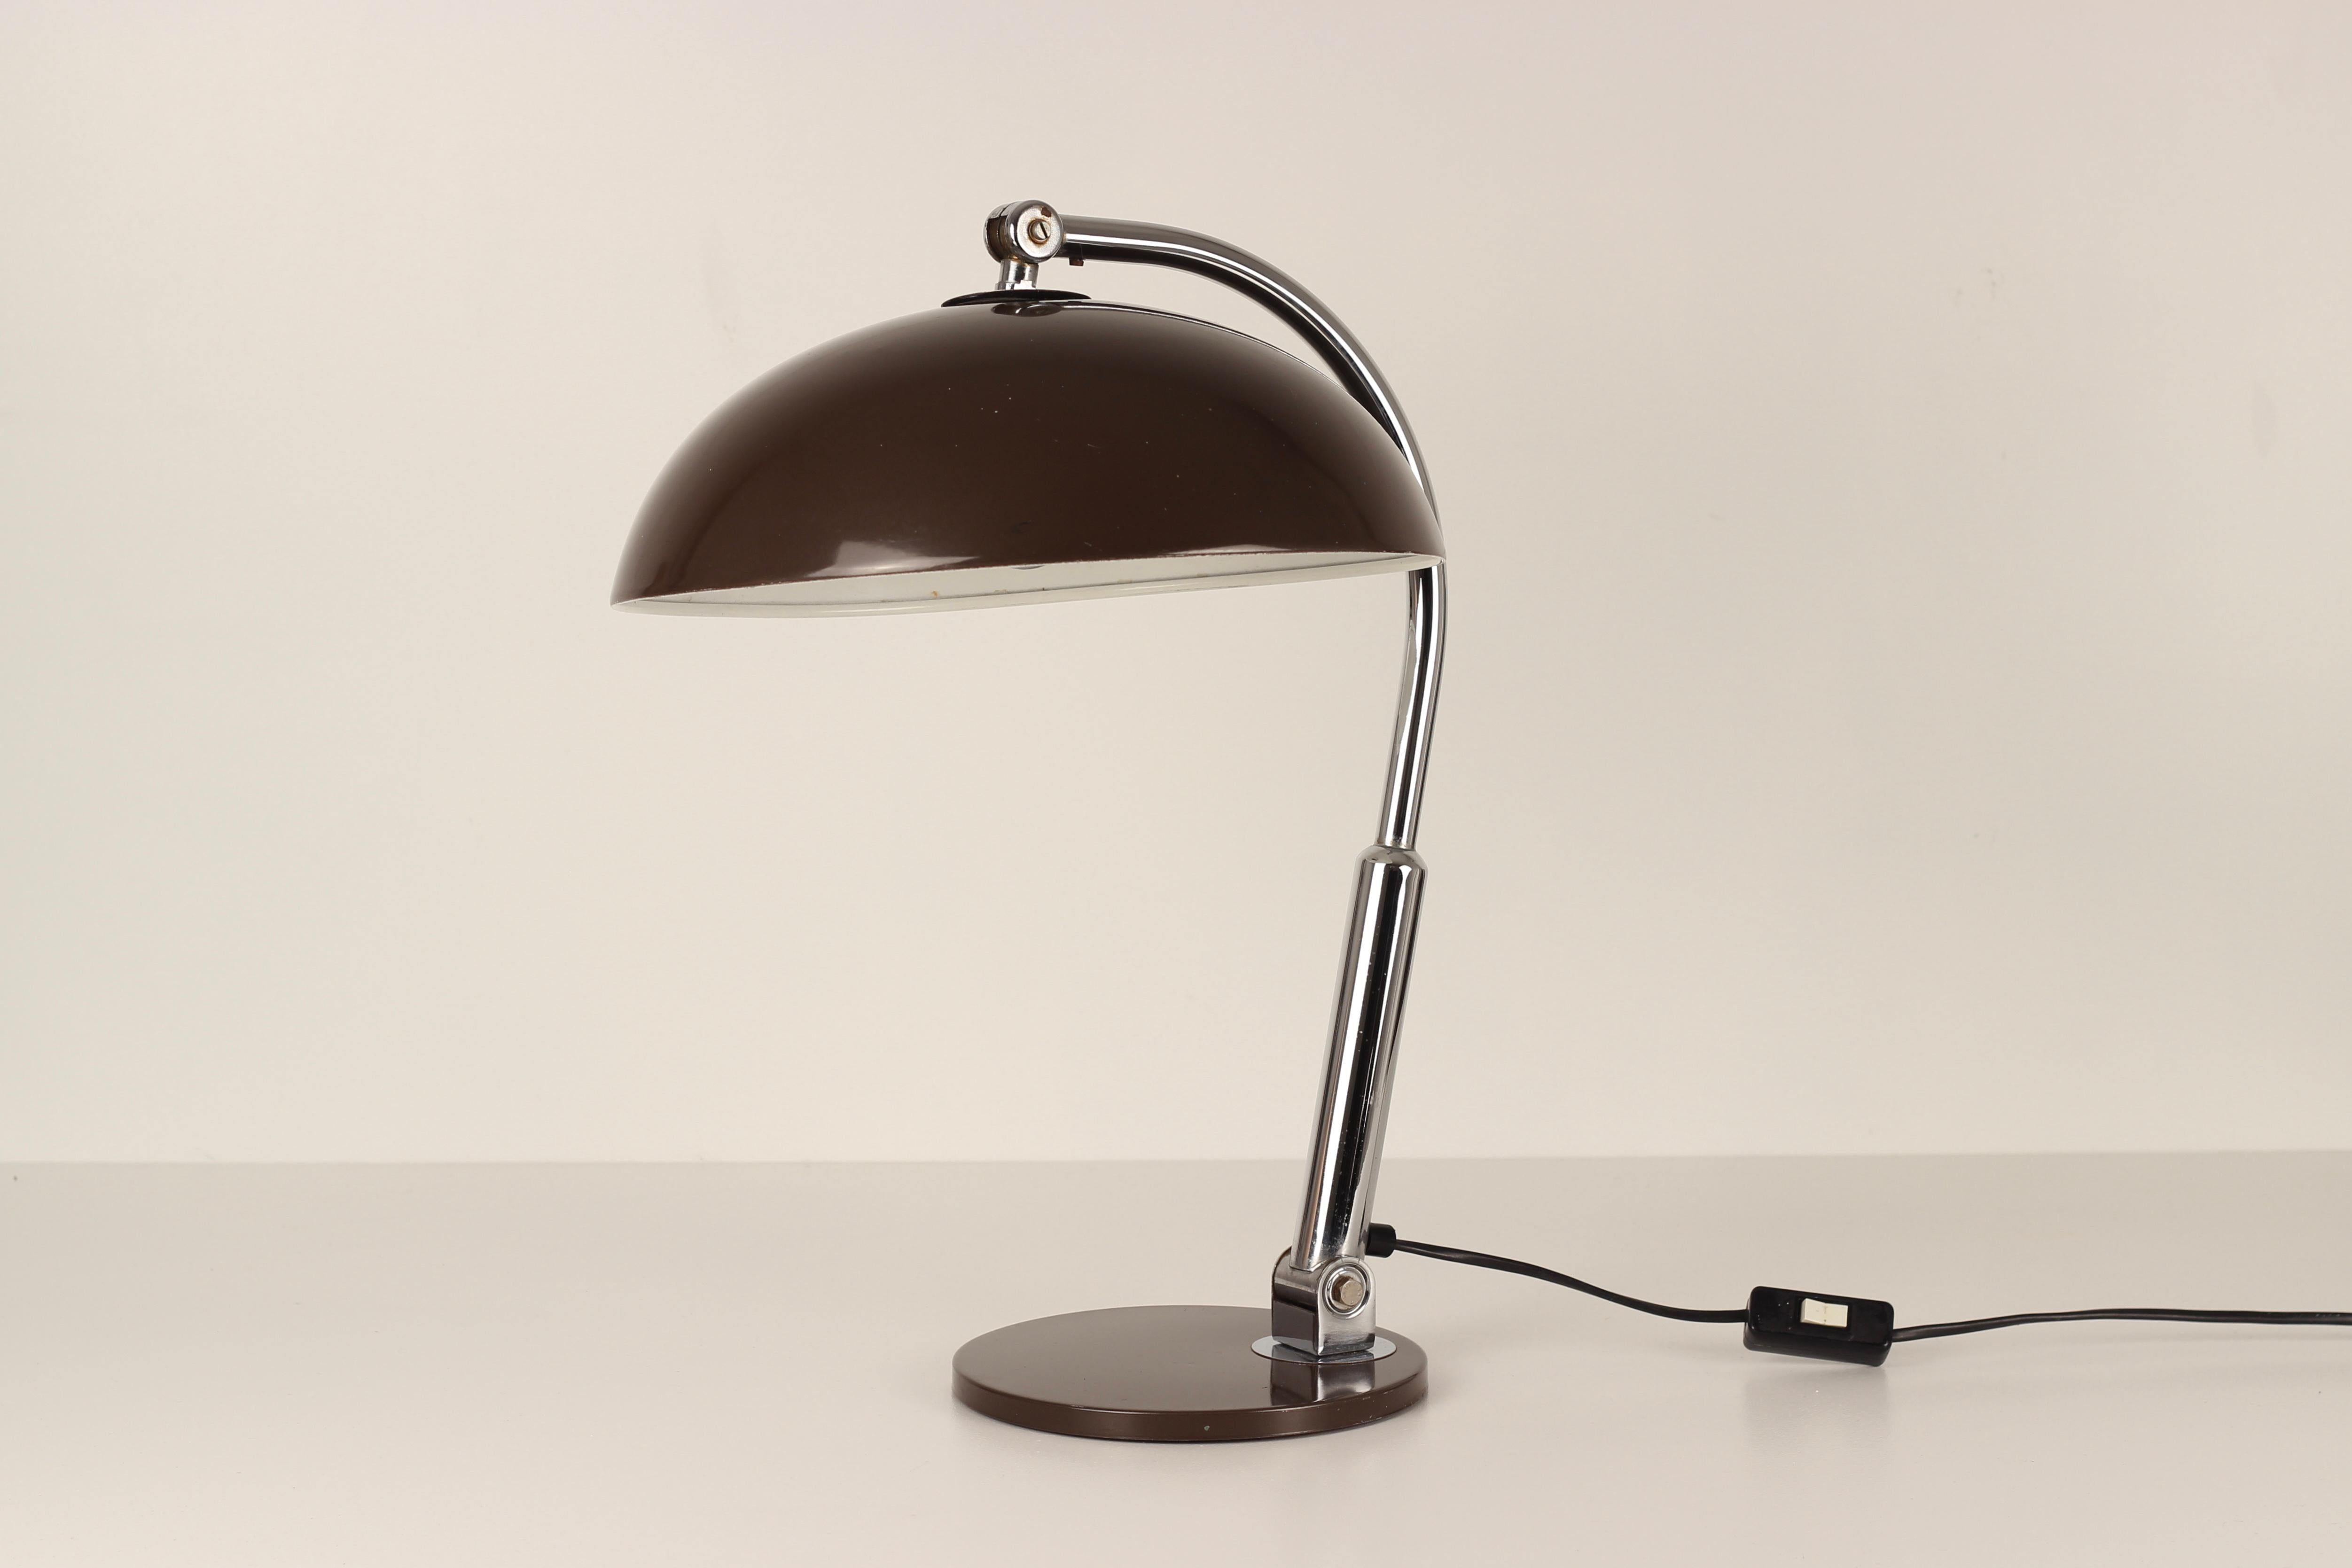 Lampe populaire conçue par Busquet et fabriquée par Hala Zeist Lampenfabriek aux Pays-Bas, vers les années 1960. Cette pièce est dotée d'un abat-jour en forme de dôme brun foncé et d'une base en forme de disque plat. Il peut être ajusté et